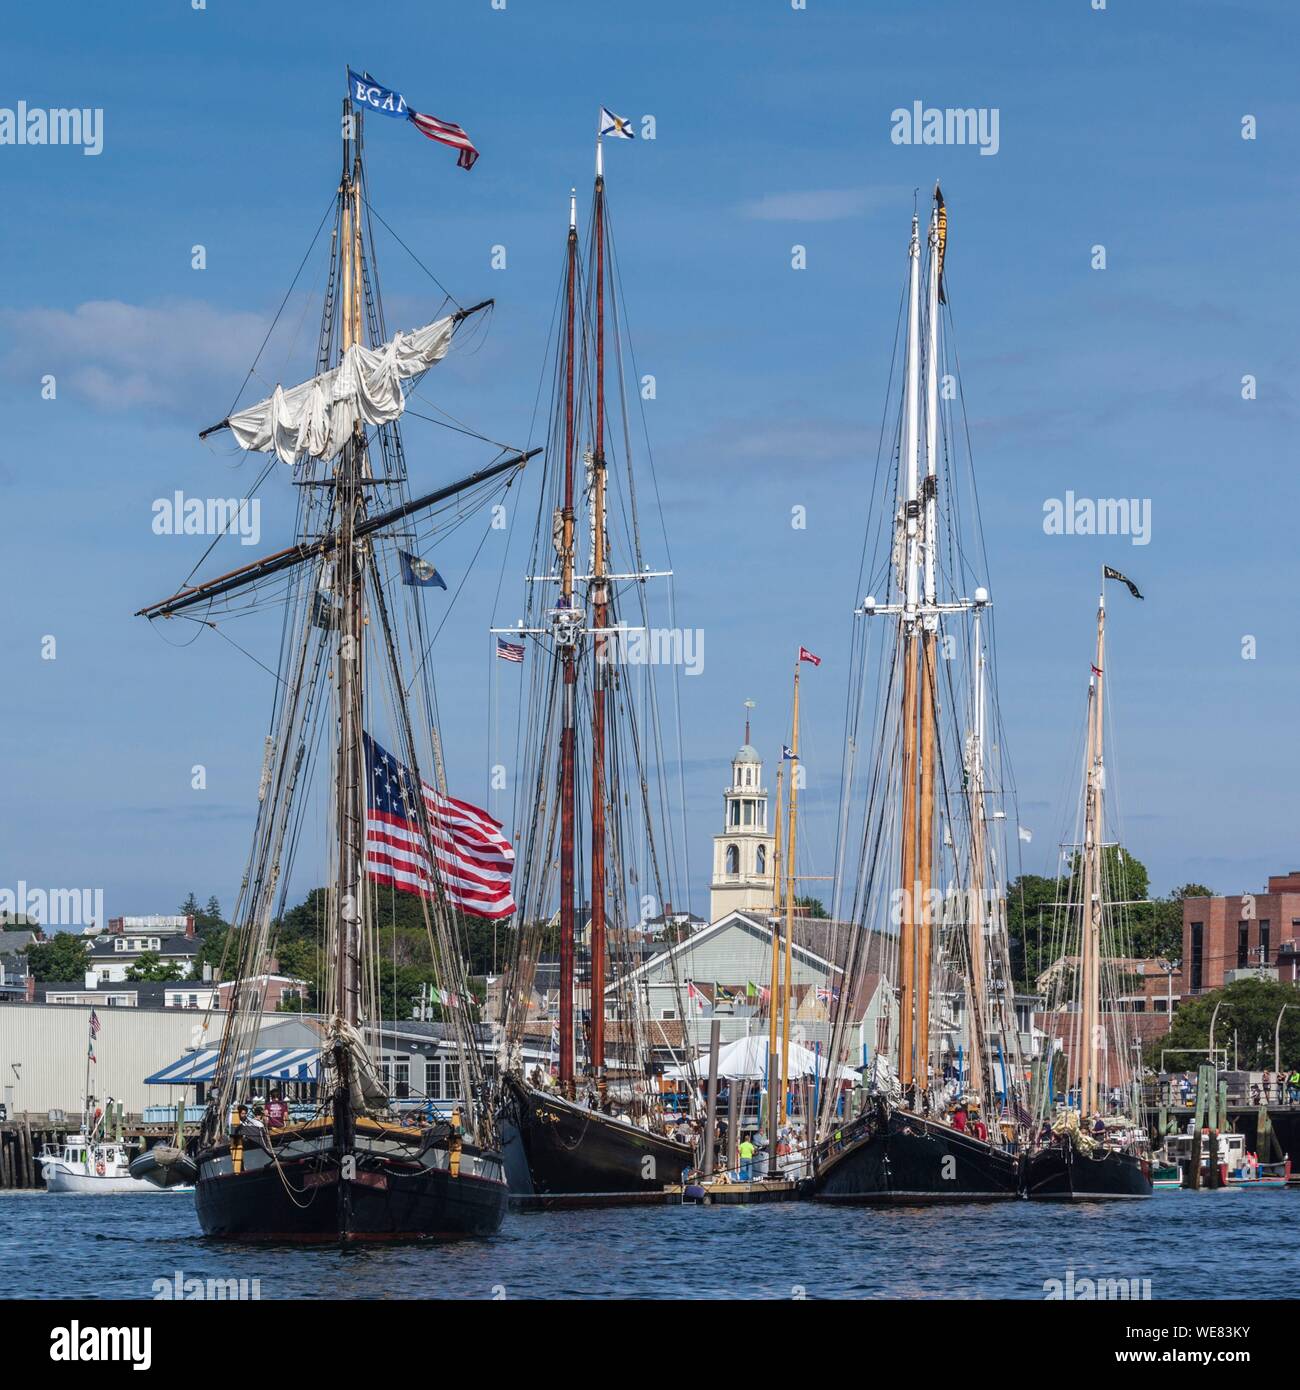 Stati Uniti, New England, Massachusetts, Cape Ann, Gloucester, Gloucester Schooner Festival, goletta parade di vela Foto Stock